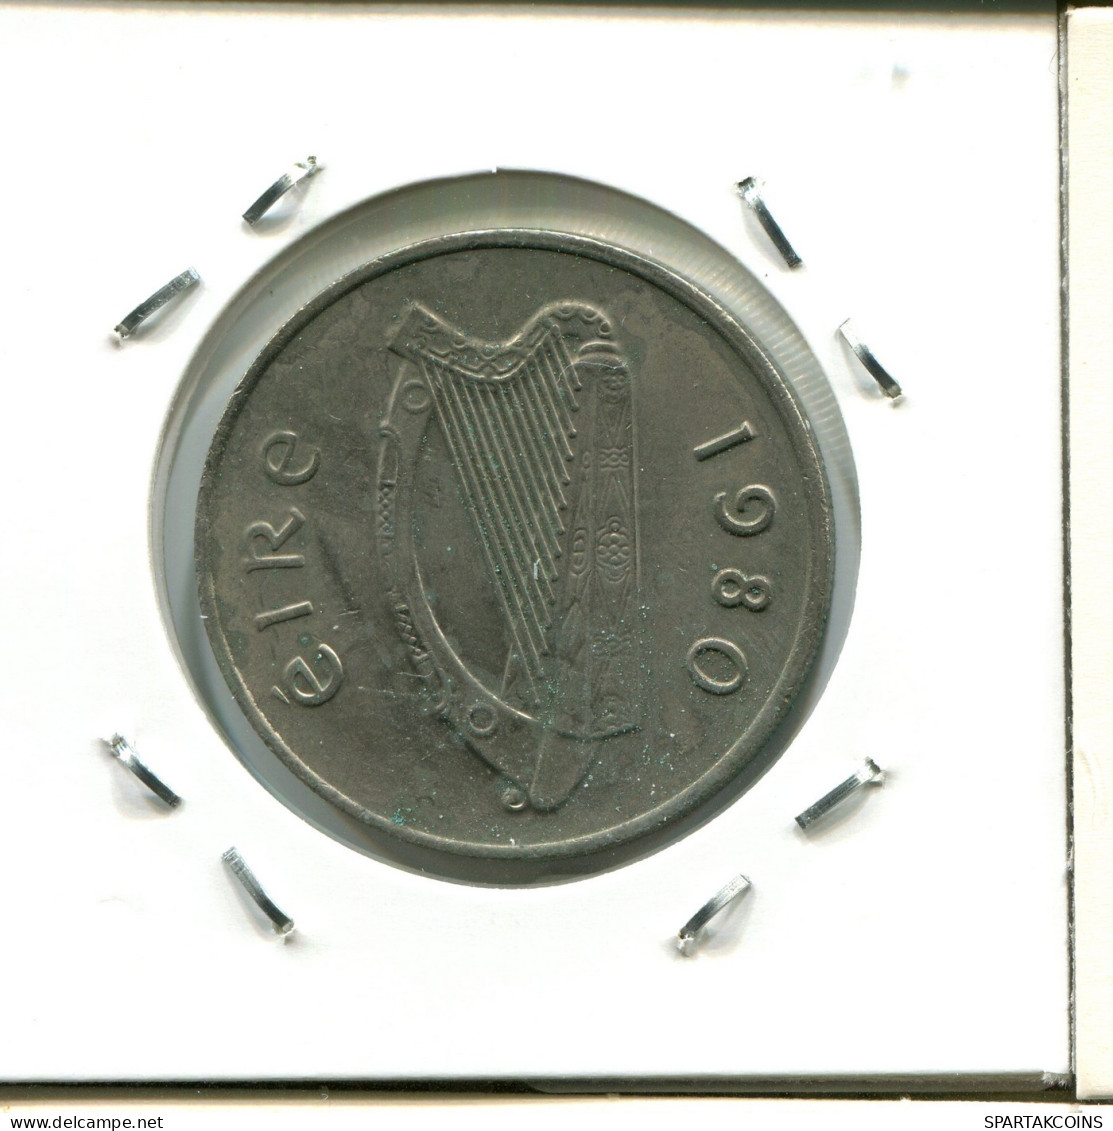 10 DRACHMES 1980 GRECIA GREECE Moneda #AW686.E.A - Greece